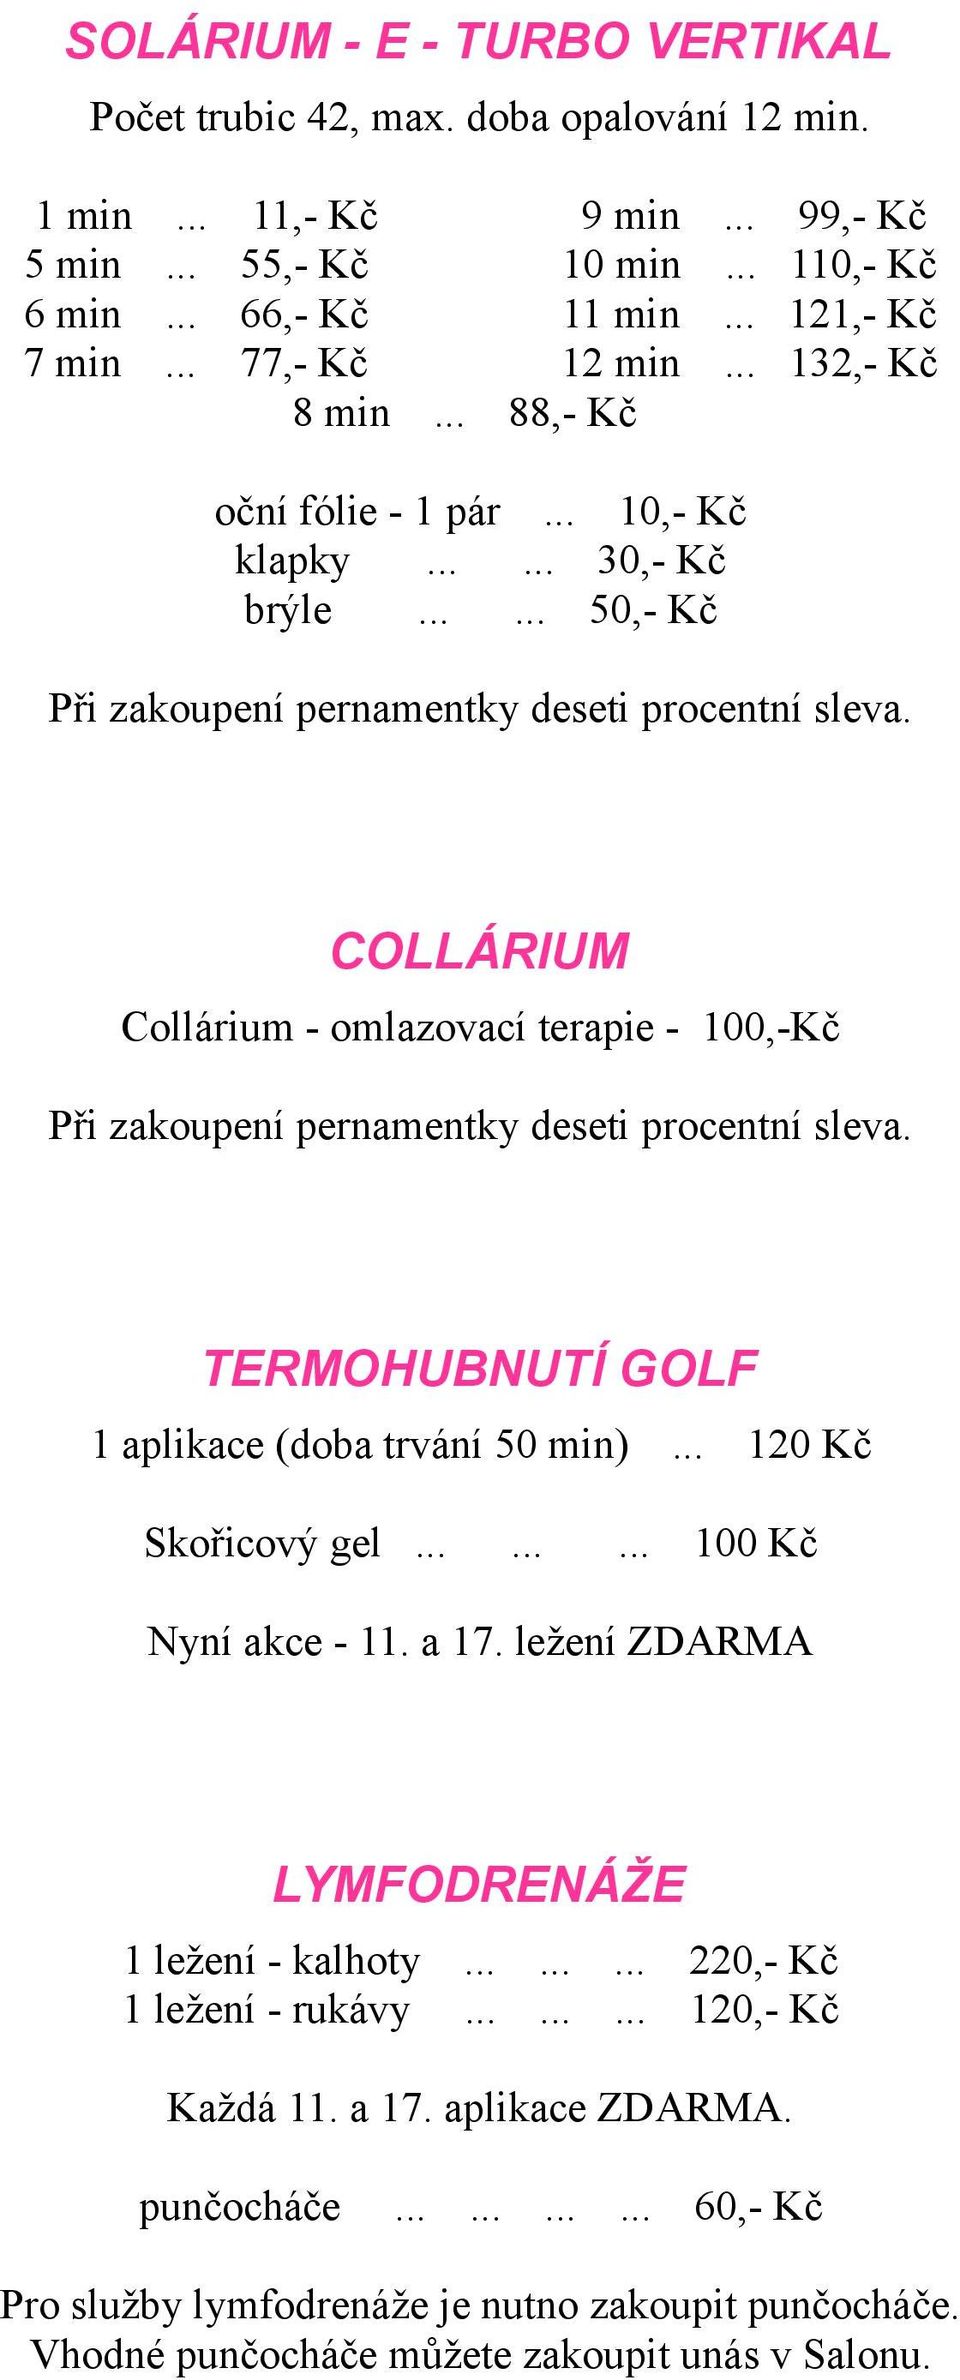 COLLÁRIUM Collárium - omlazovací terapie - 100,-Kč Při zakoupení pernamentky deseti procentní sleva. TERMOHUBNUTÍ GOLF 1 aplikace (doba trvání 50 min)... 120 Kč Skořicový gel......... 100 Kč Nyní akce - 11.